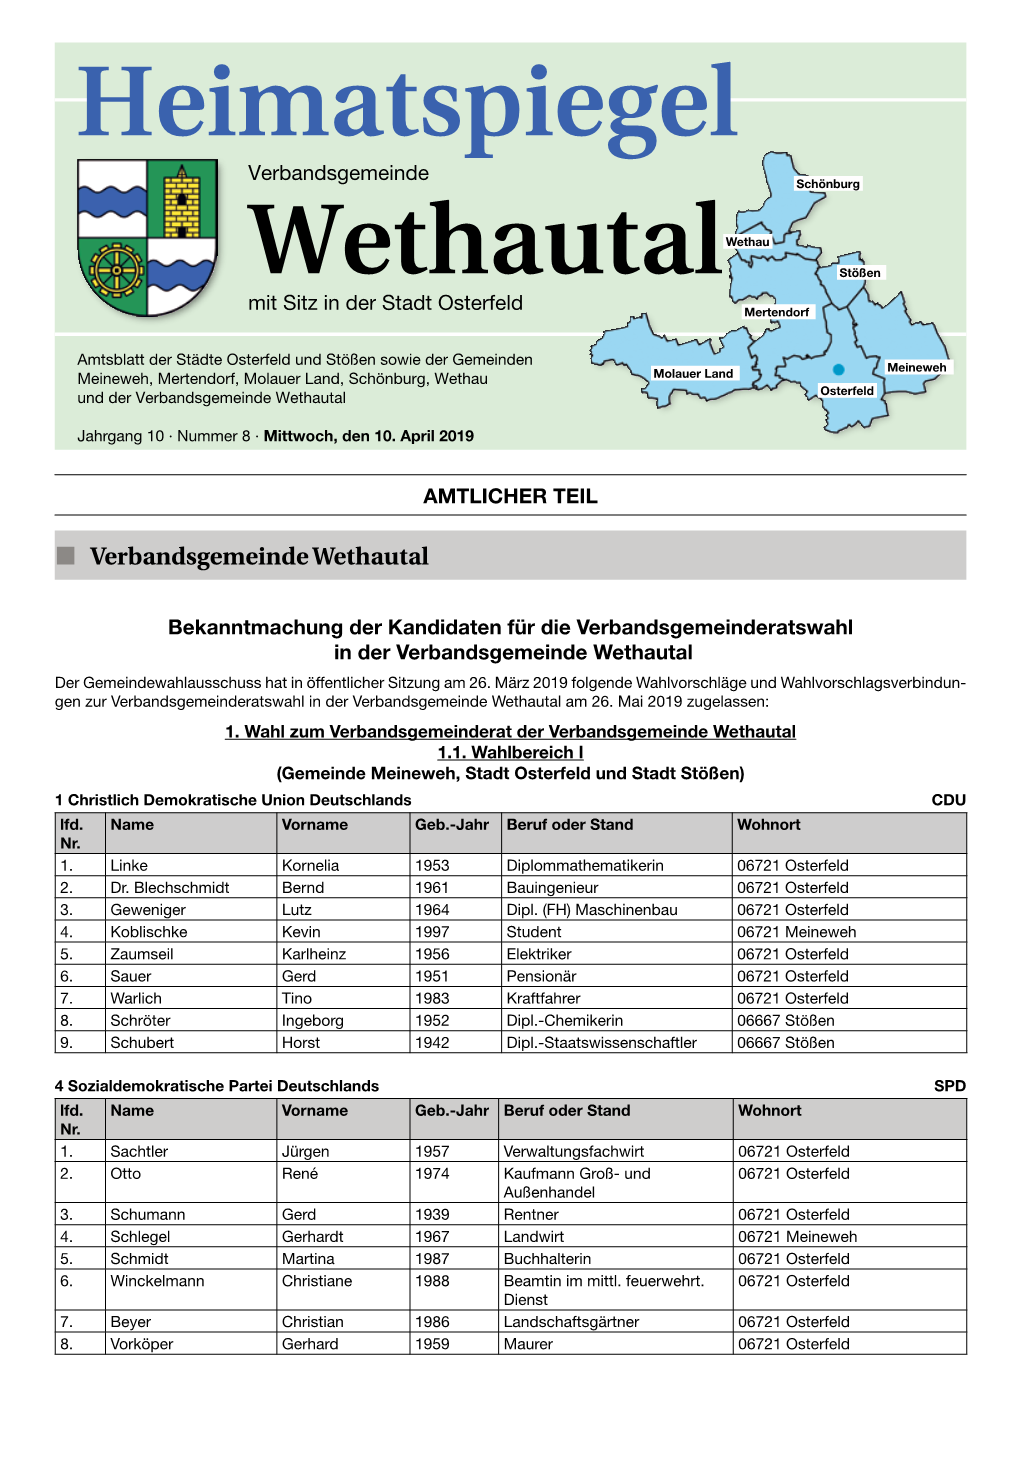 Wethau Tal Amtl 08 2019